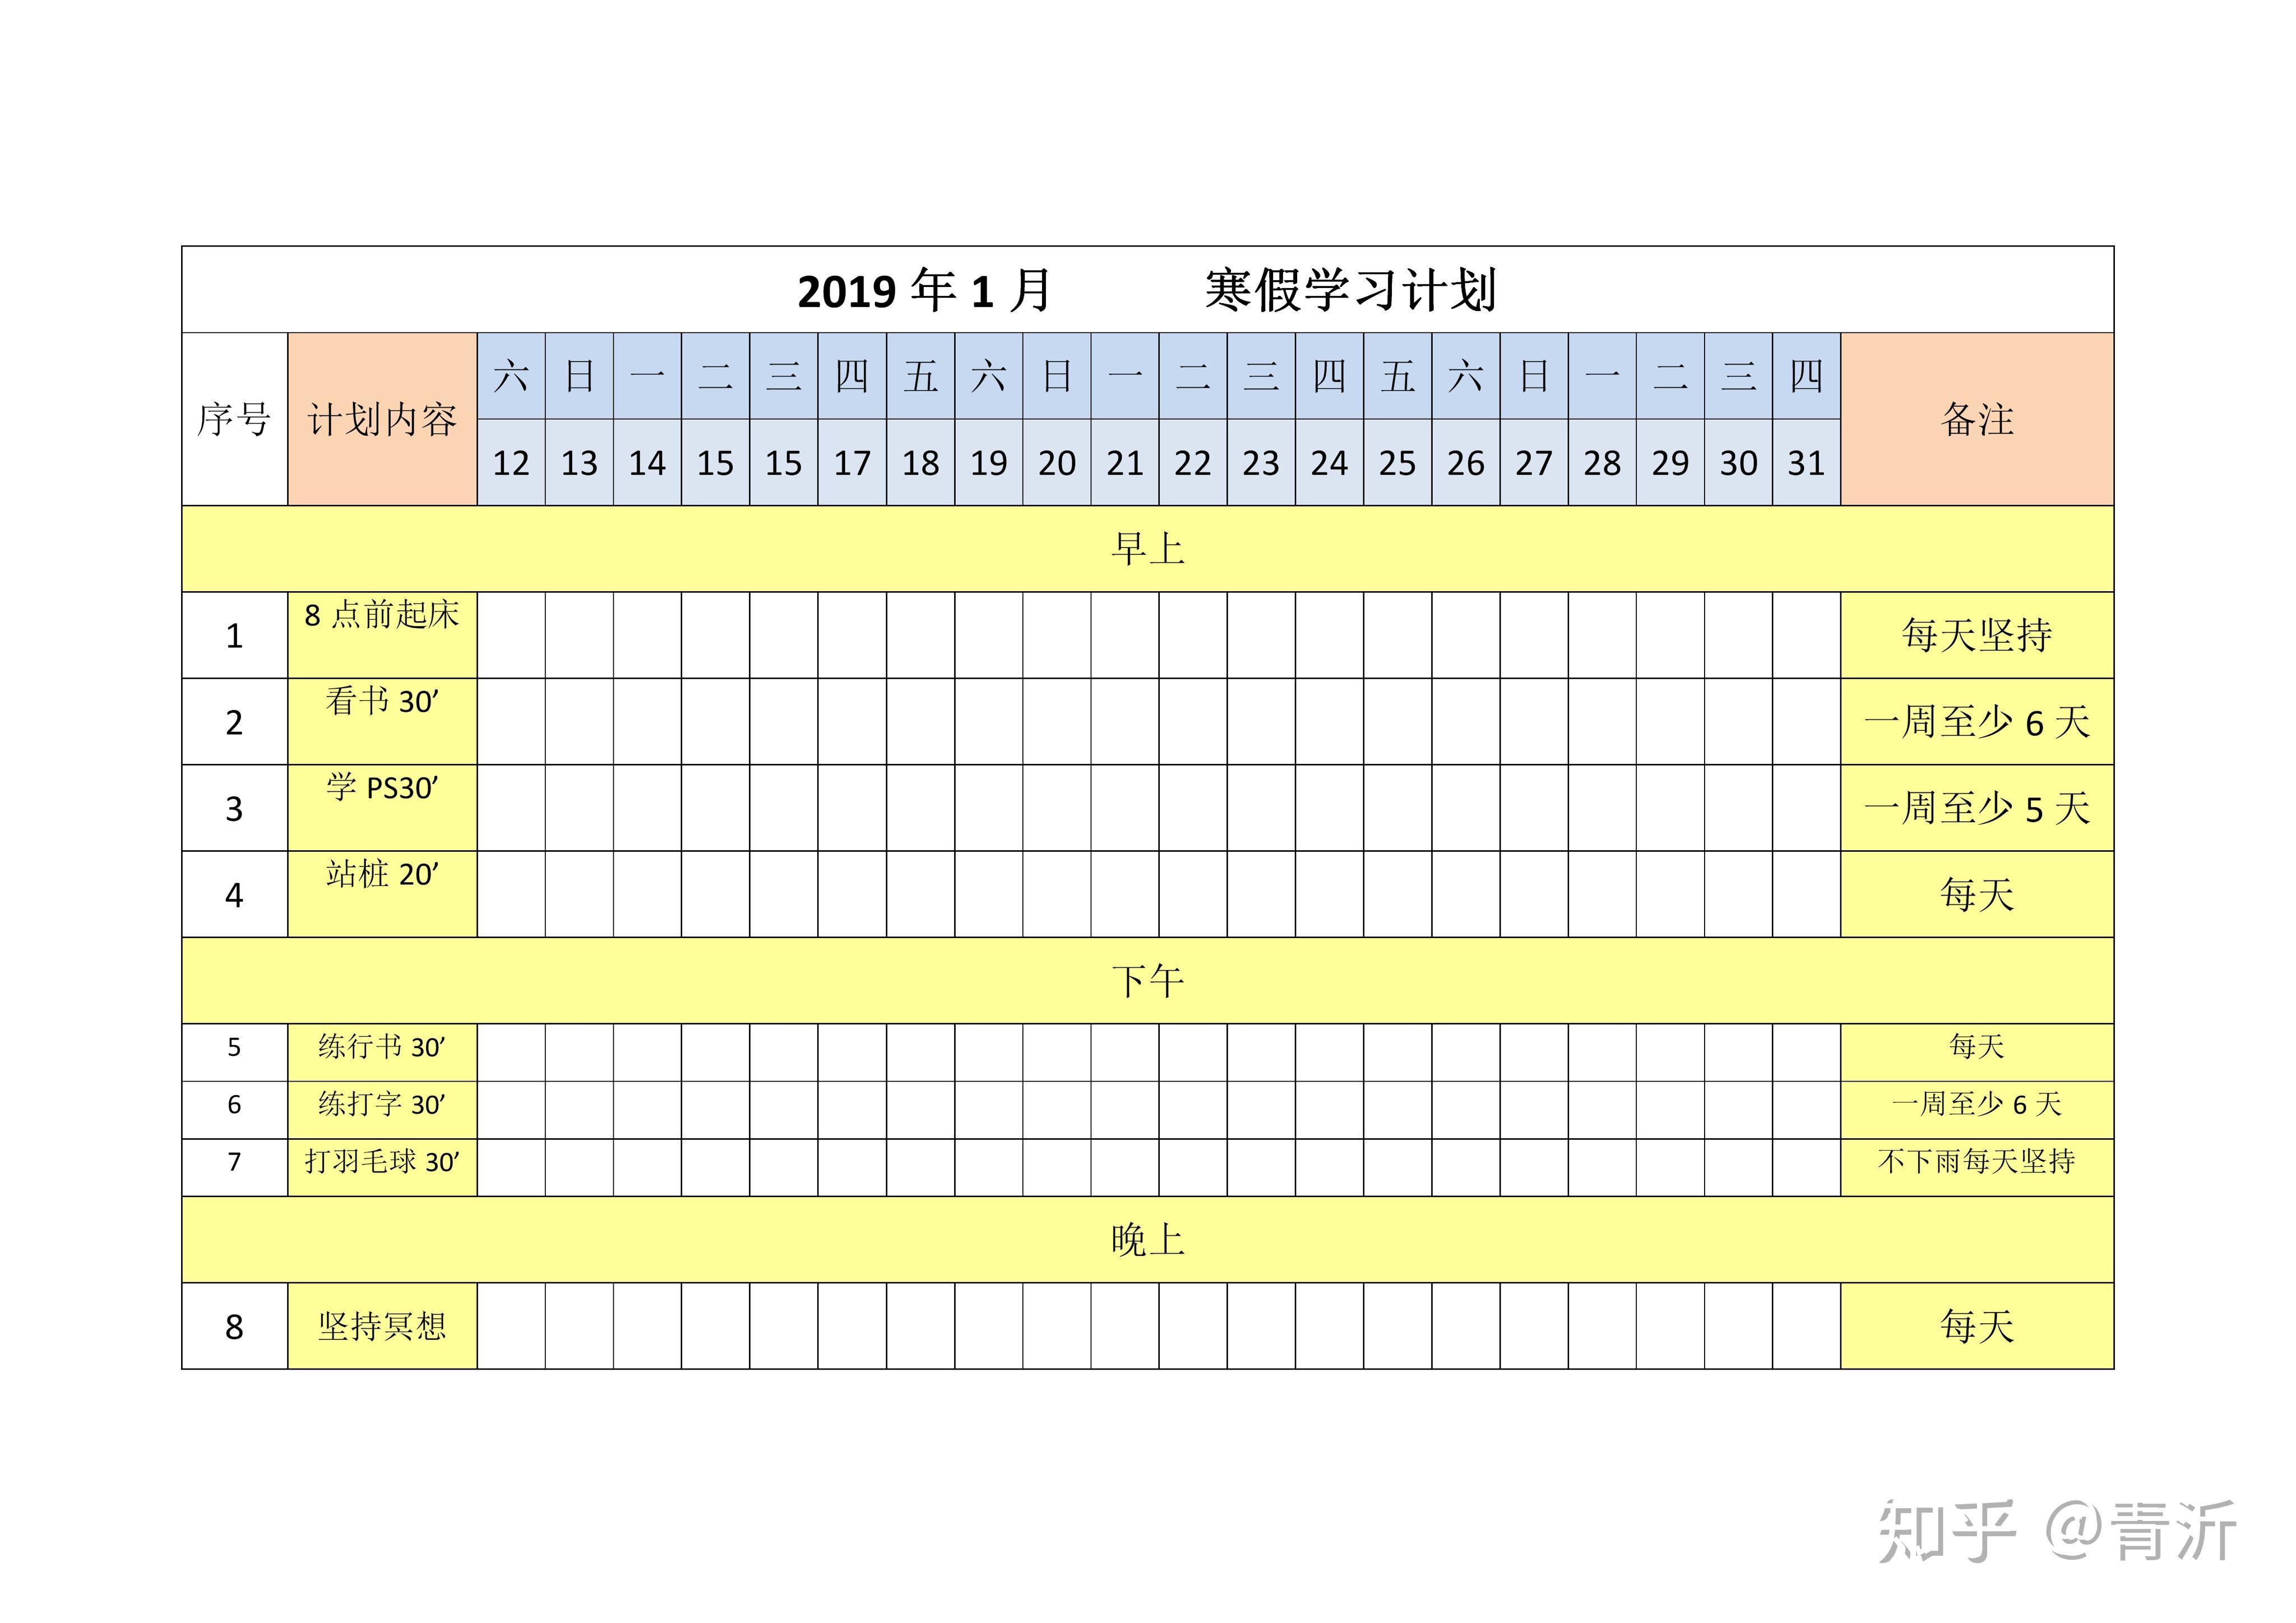 黄蓝色读书计划表简洁学校交流中文课程计划表 - 模板 - Canva可画